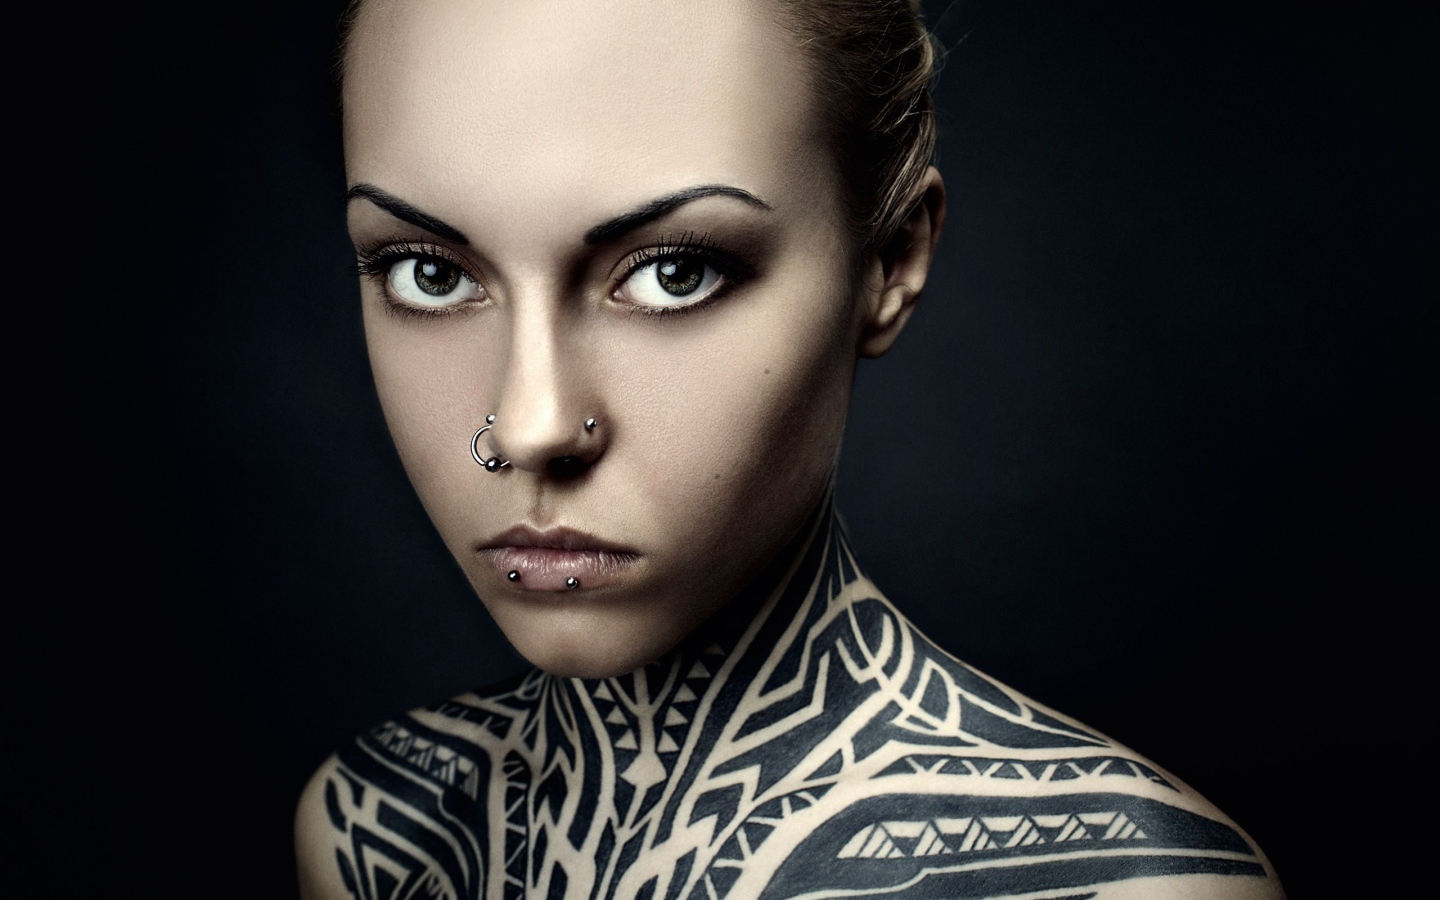 Девушка с пирсингом и татуировкой